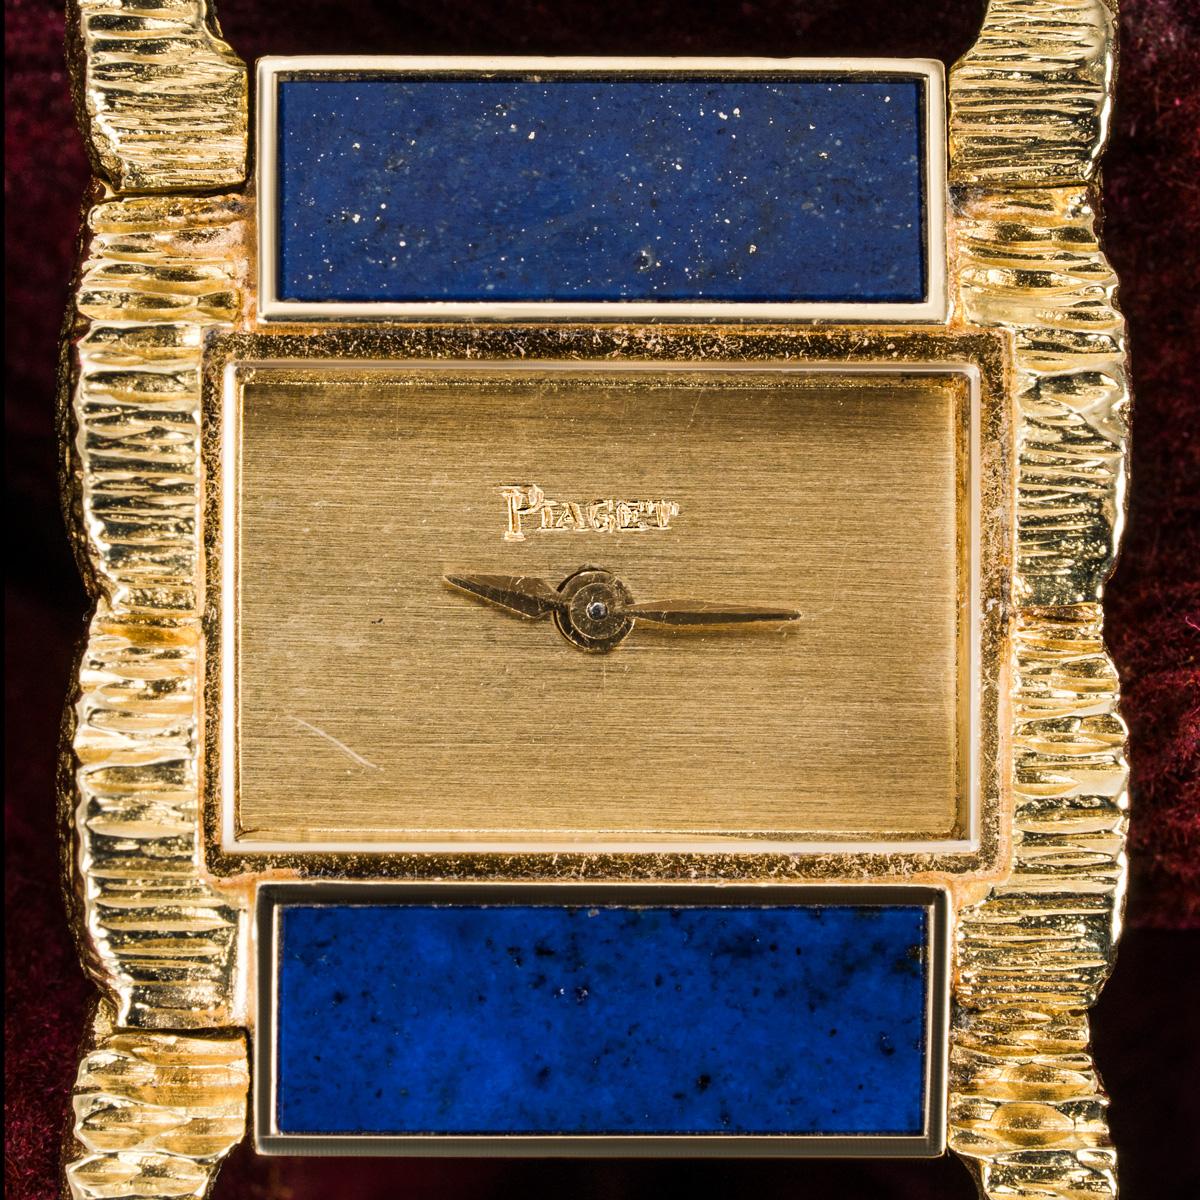 Cette montre-bracelet pour femme, sertie de lapis-lazuli et de malachite, est une pièce vintage rare, dotée d'un mouvement à remontage manuel à ancre, de Piaget. 

Un cadran champagne est dissimulé derrière un verre minéral et entouré d'une lunette